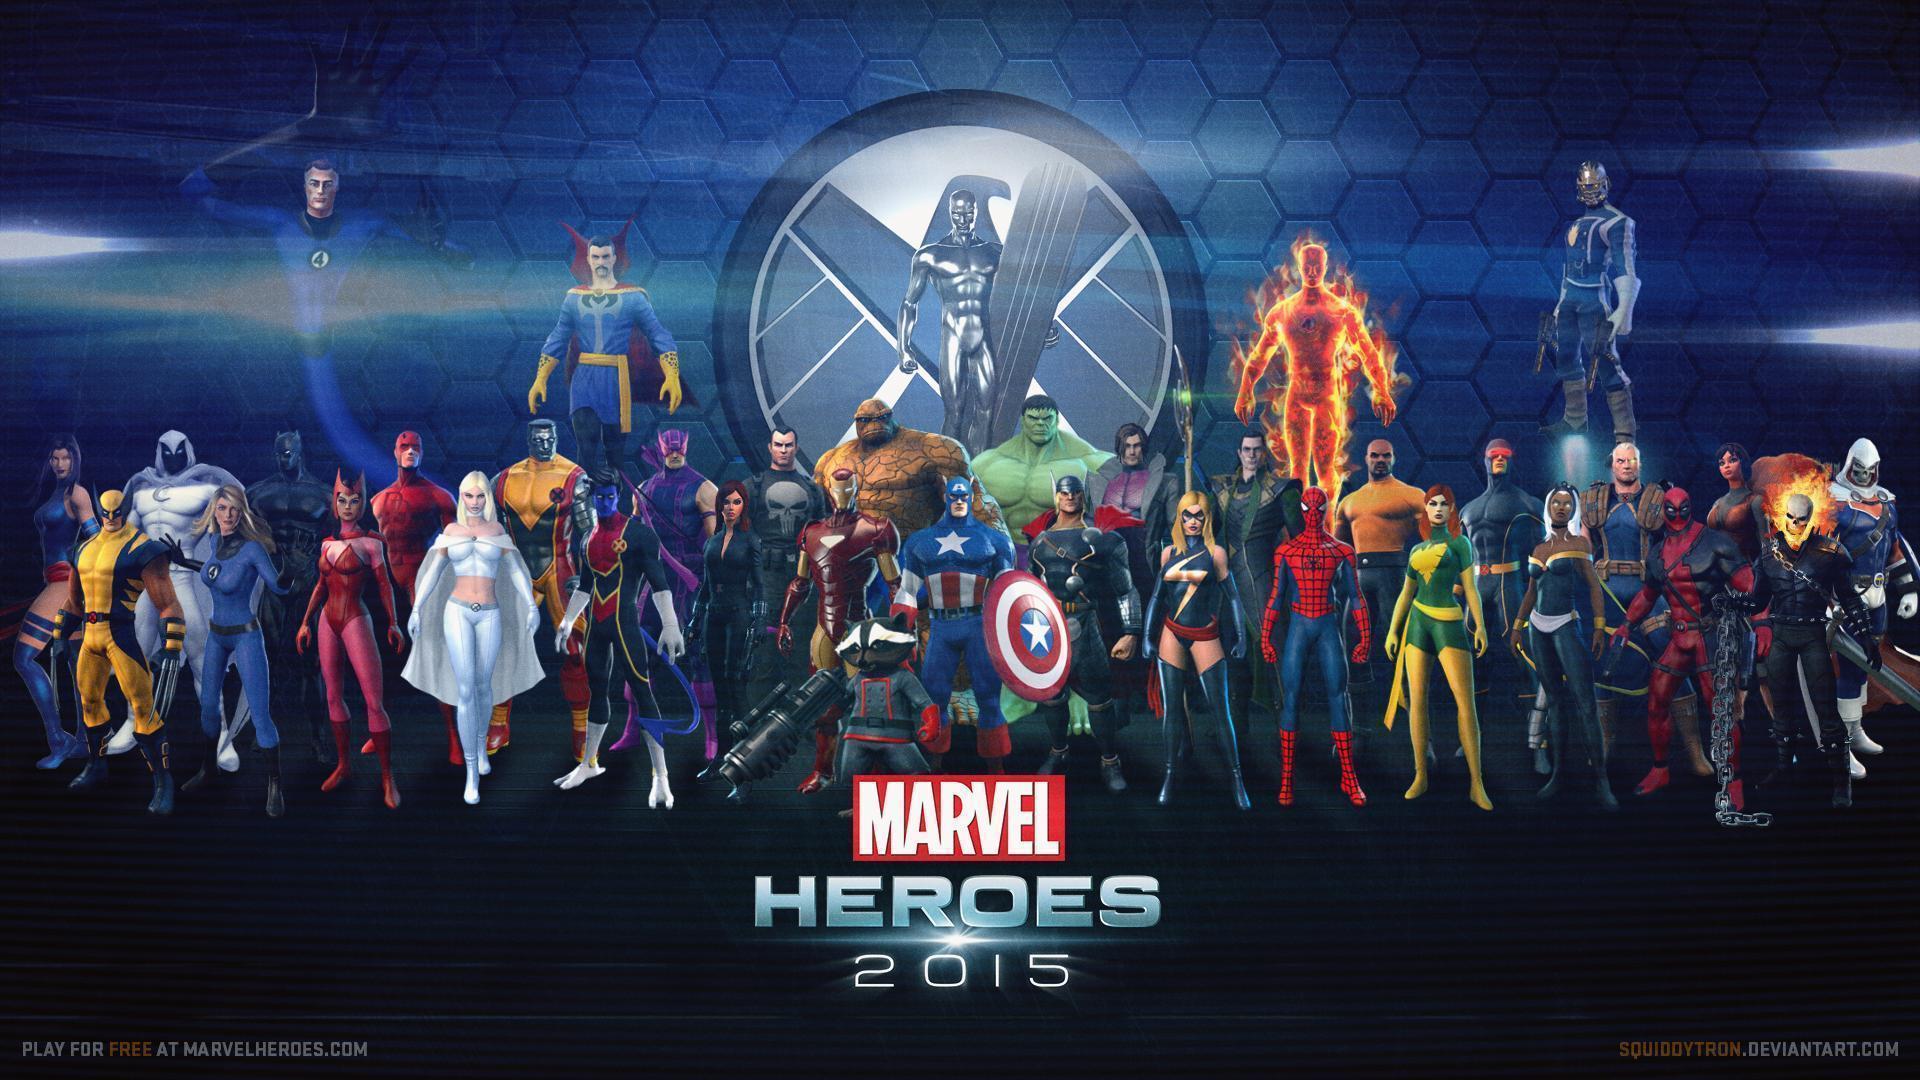 Marvel Heroes Wallpaper (UPDATED w/ STAR LORD) Heroes 2015